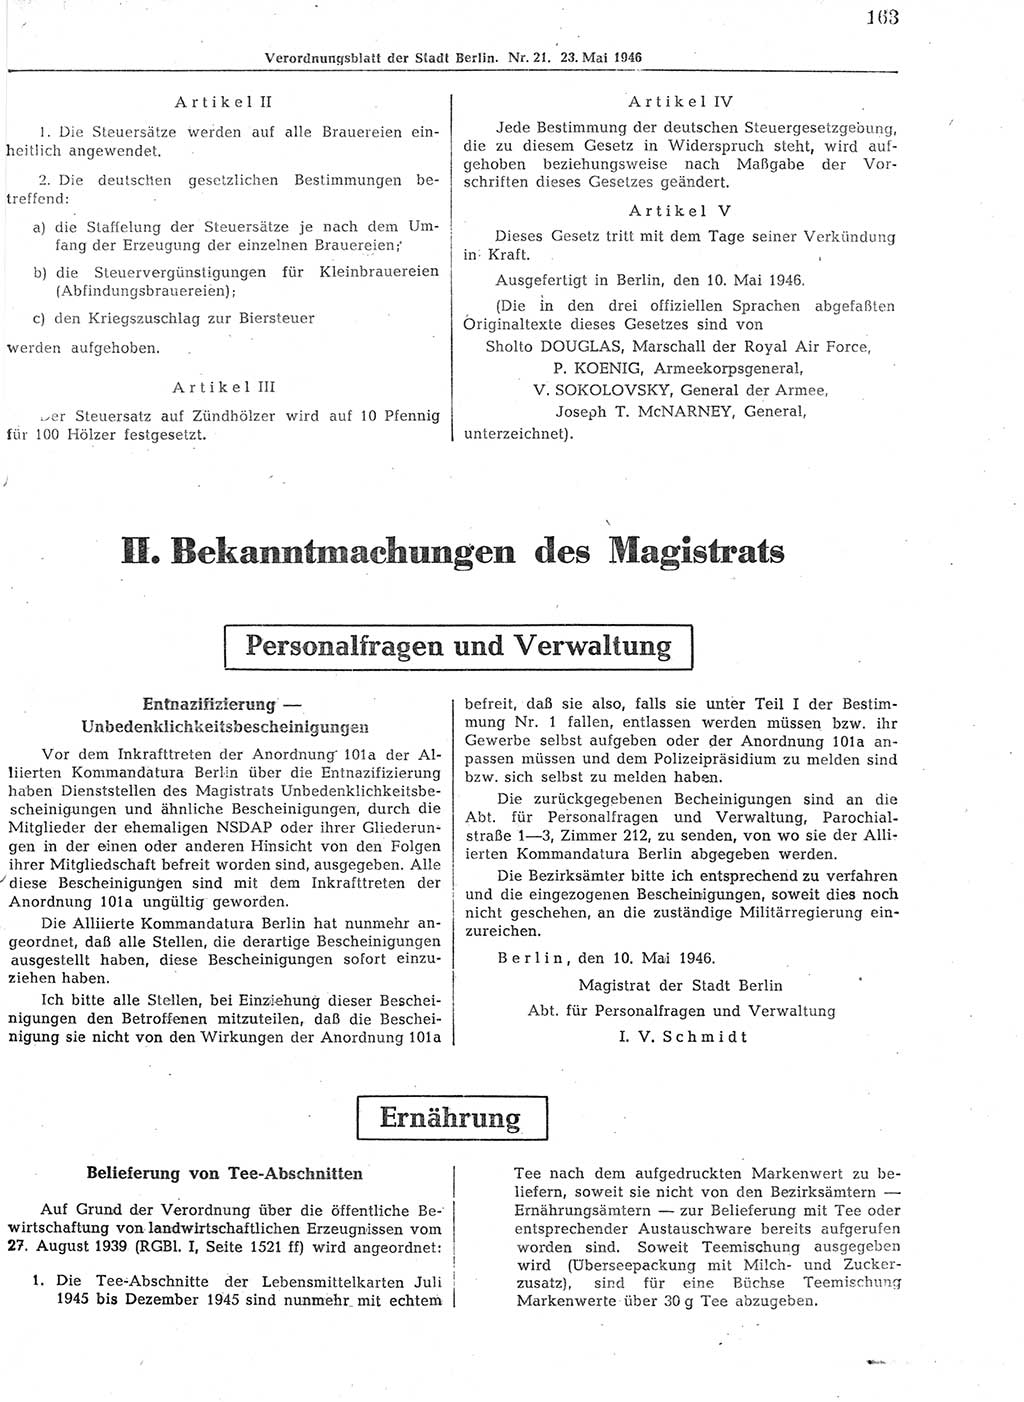 Verordnungsblatt (VOBl.) der Stadt Berlin, für Groß-Berlin 1946, Seite 163 (VOBl. Bln. 1946, S. 163)